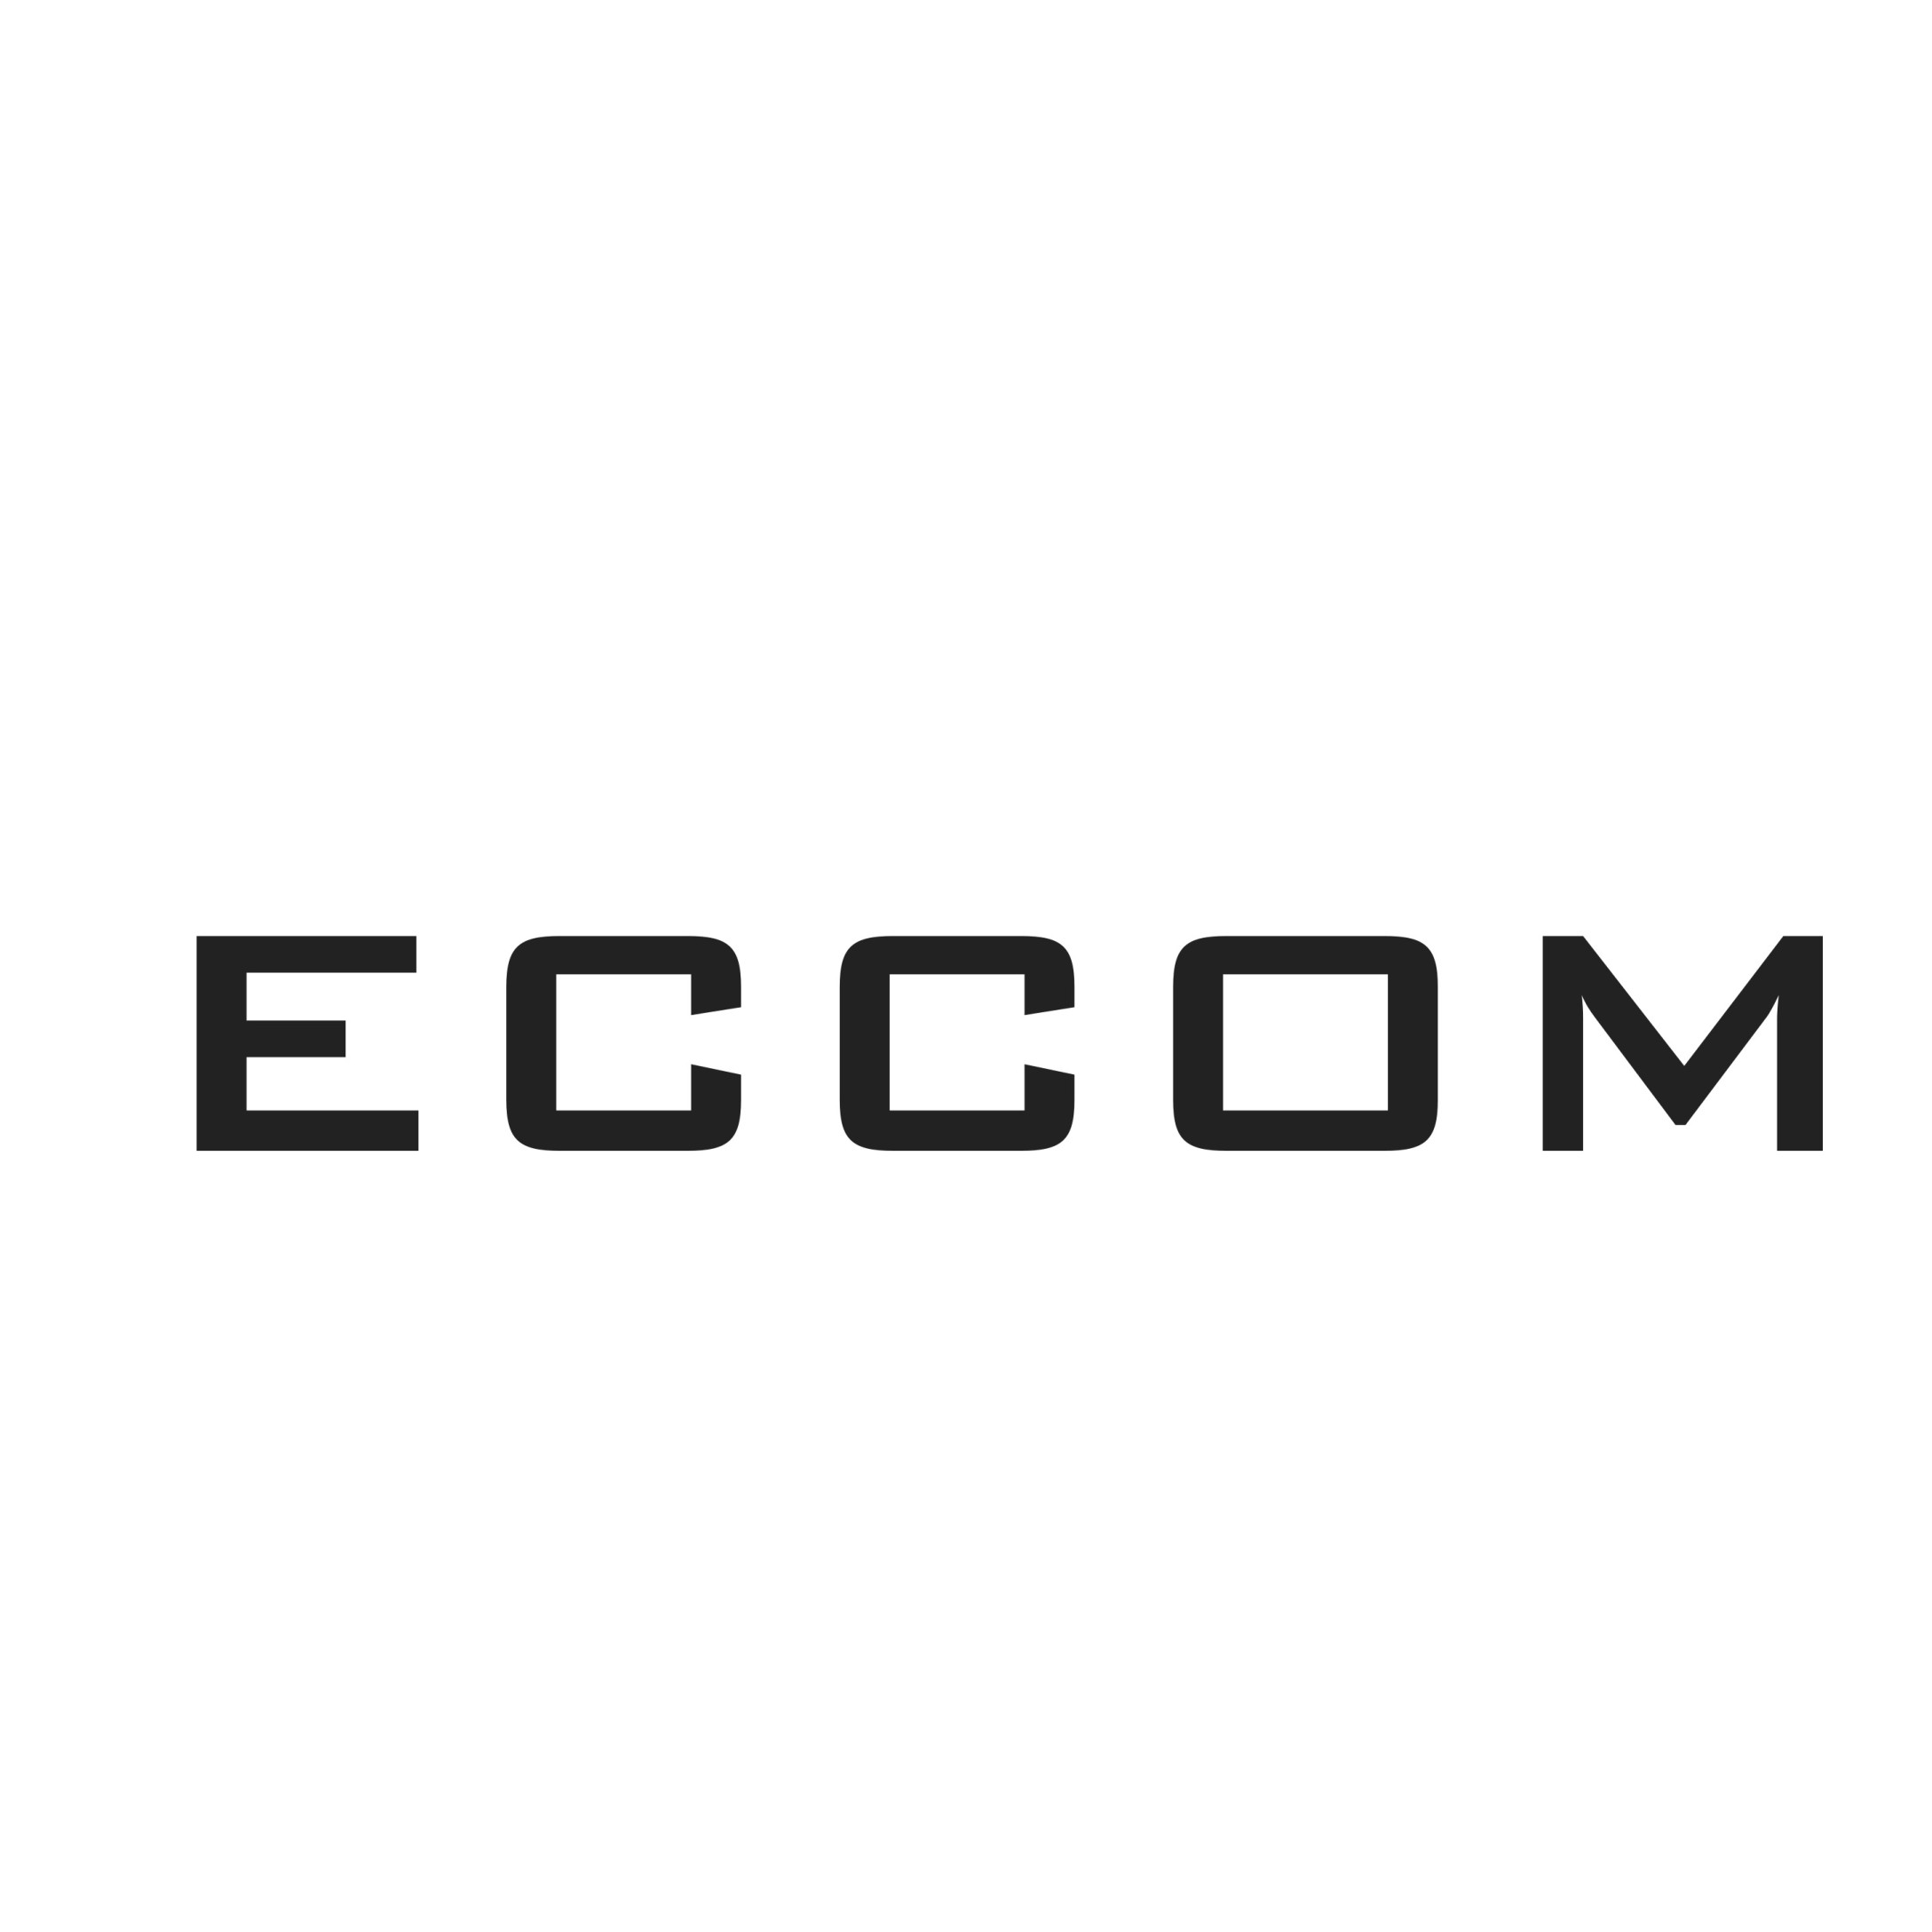 ECCOM OÜ - Innovatsioon läbi kvaliteedi, detailideni välja!